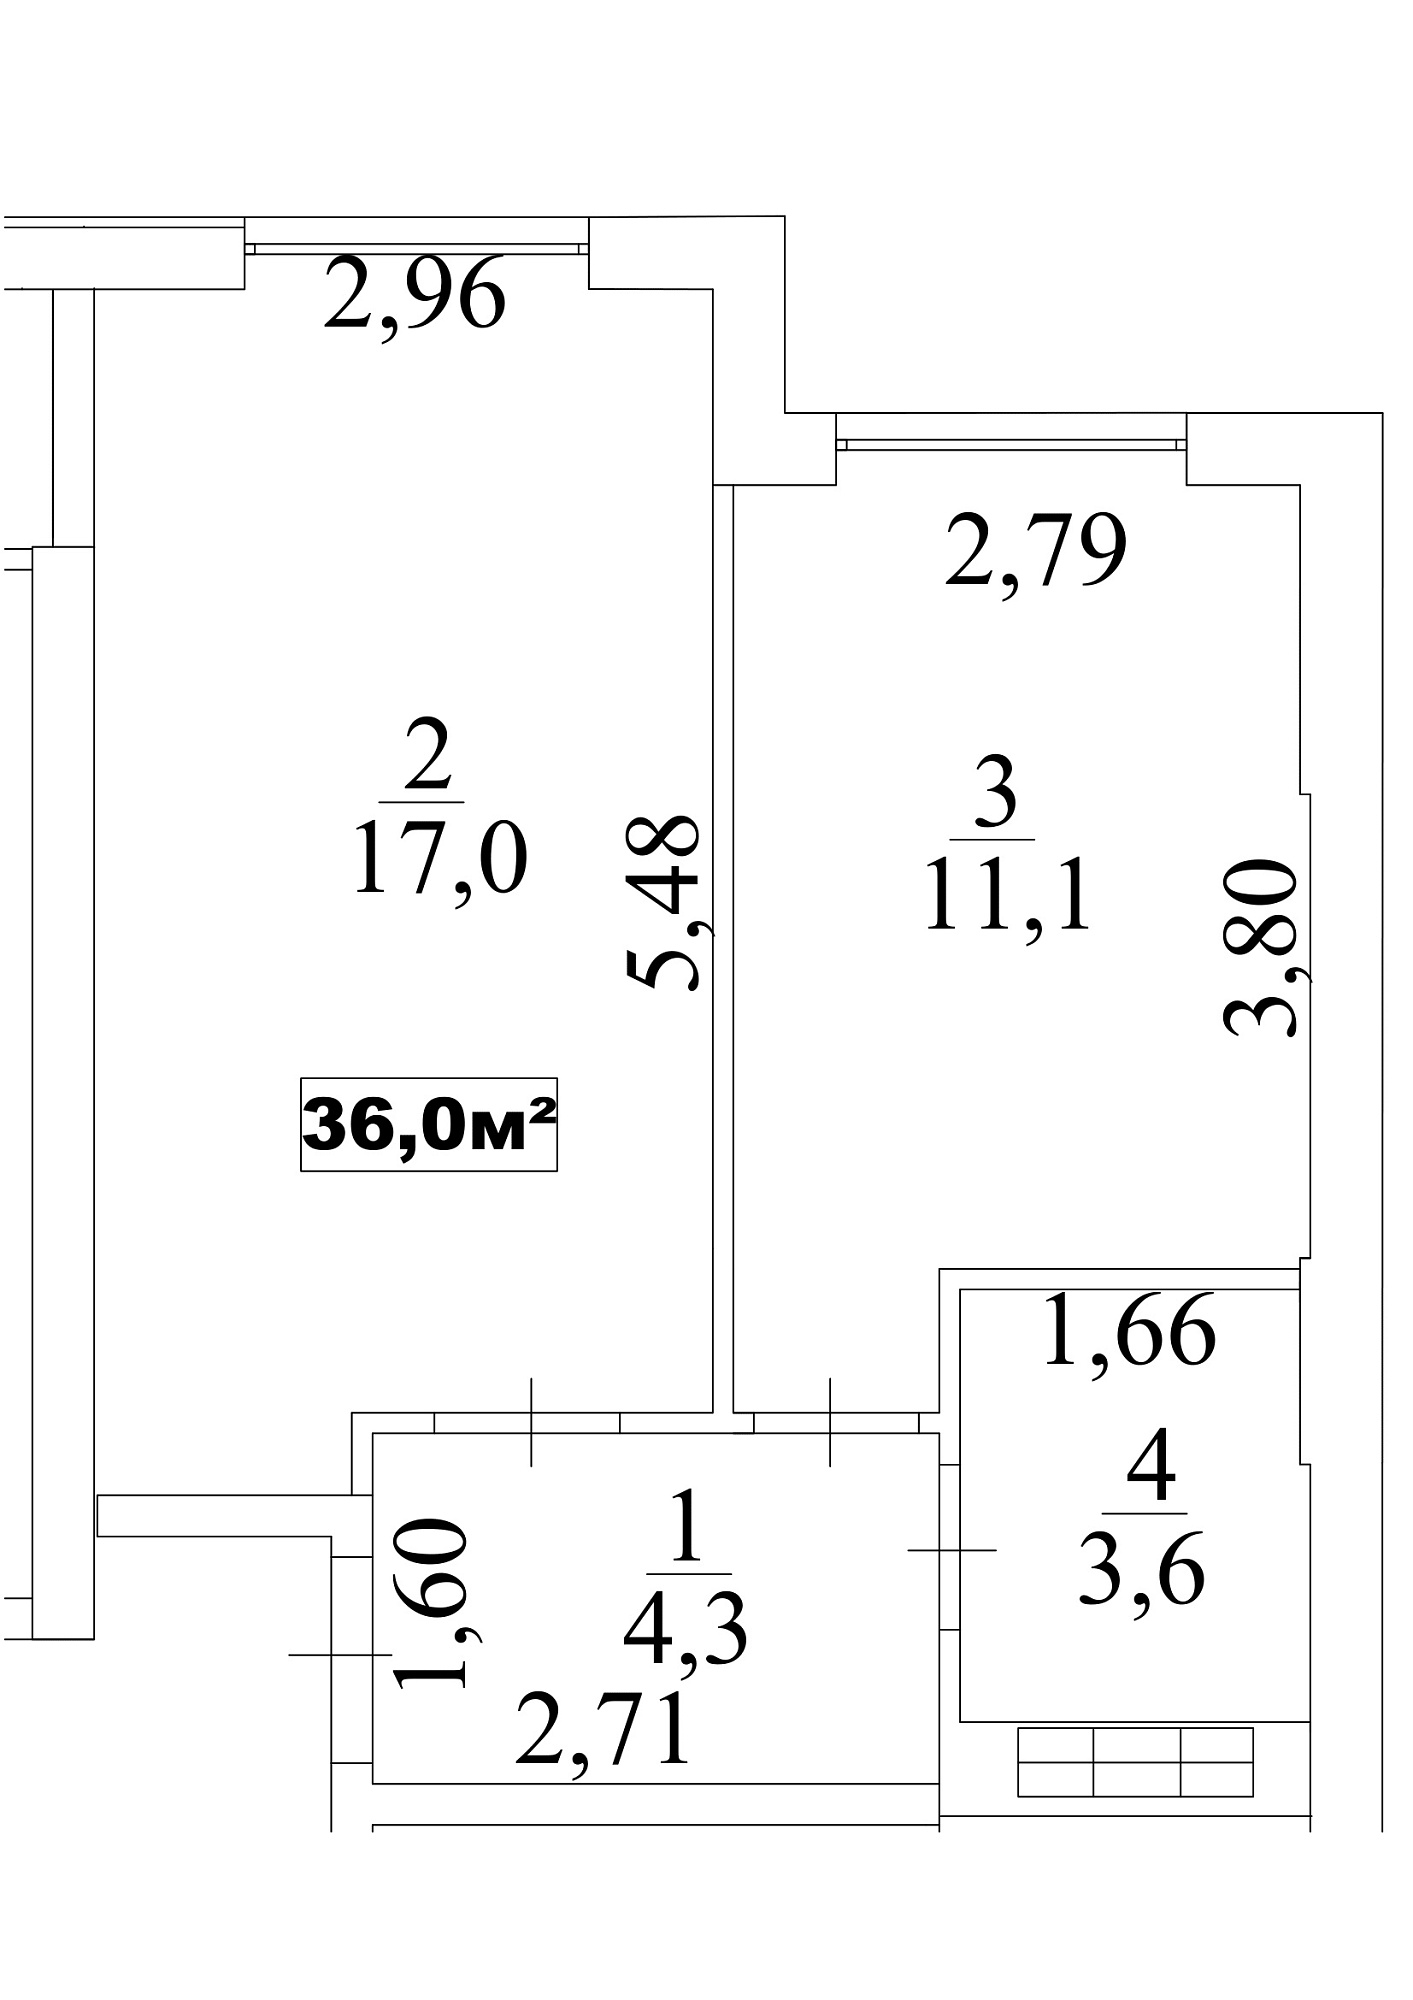 Планировка 1-к квартира площей 36м2, AB-10-08/0070б.